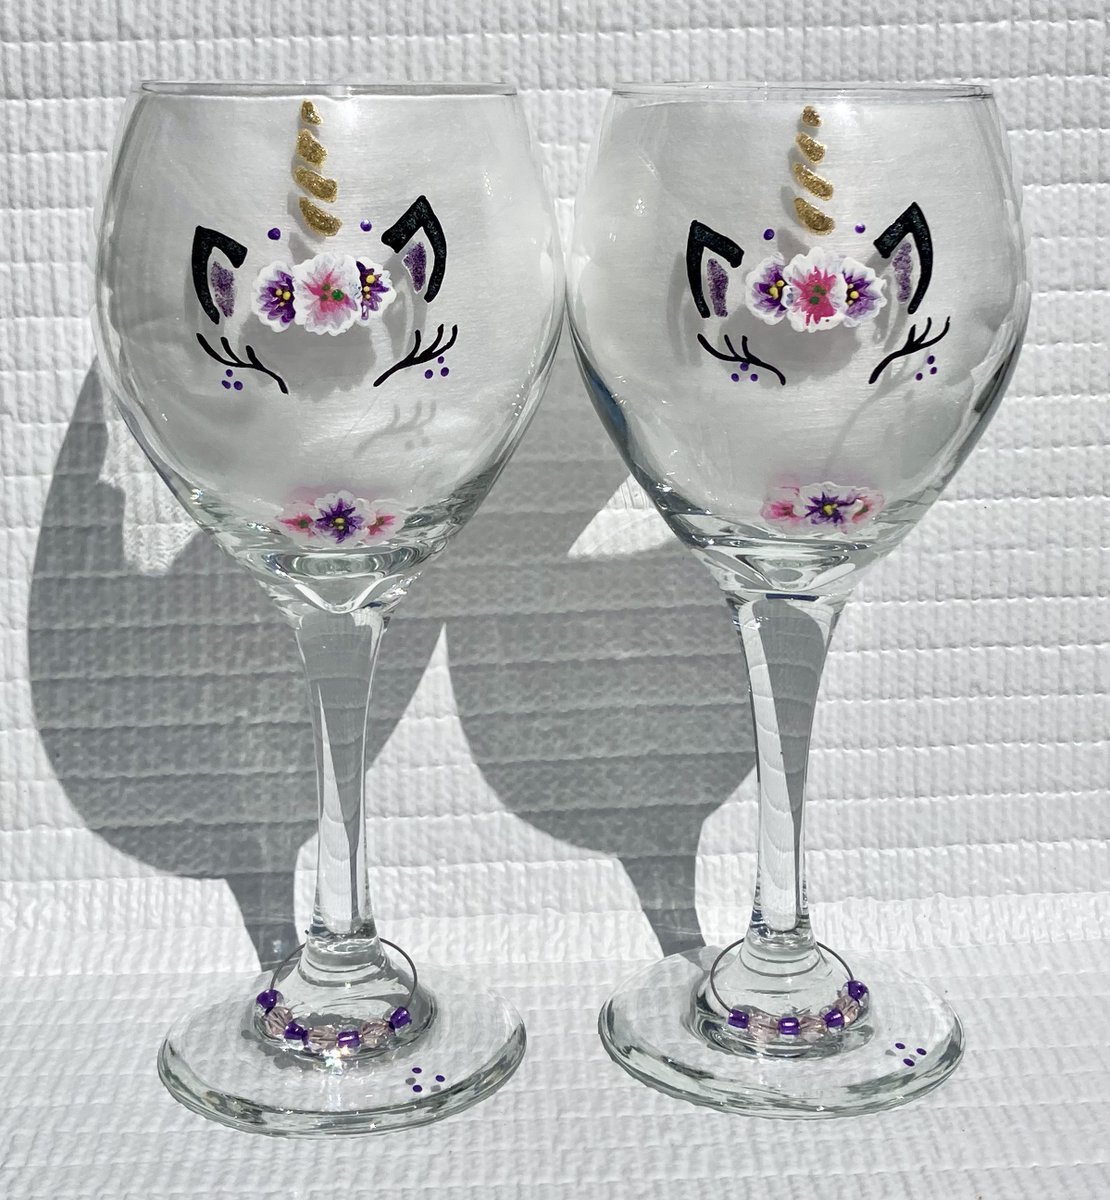 Unicorn lover gift etsy.com/listing/119058… #unicorn #wineglasses #giftsforher #SMILEtt23 #CraftBizParty #etsyshop #birthdaygift